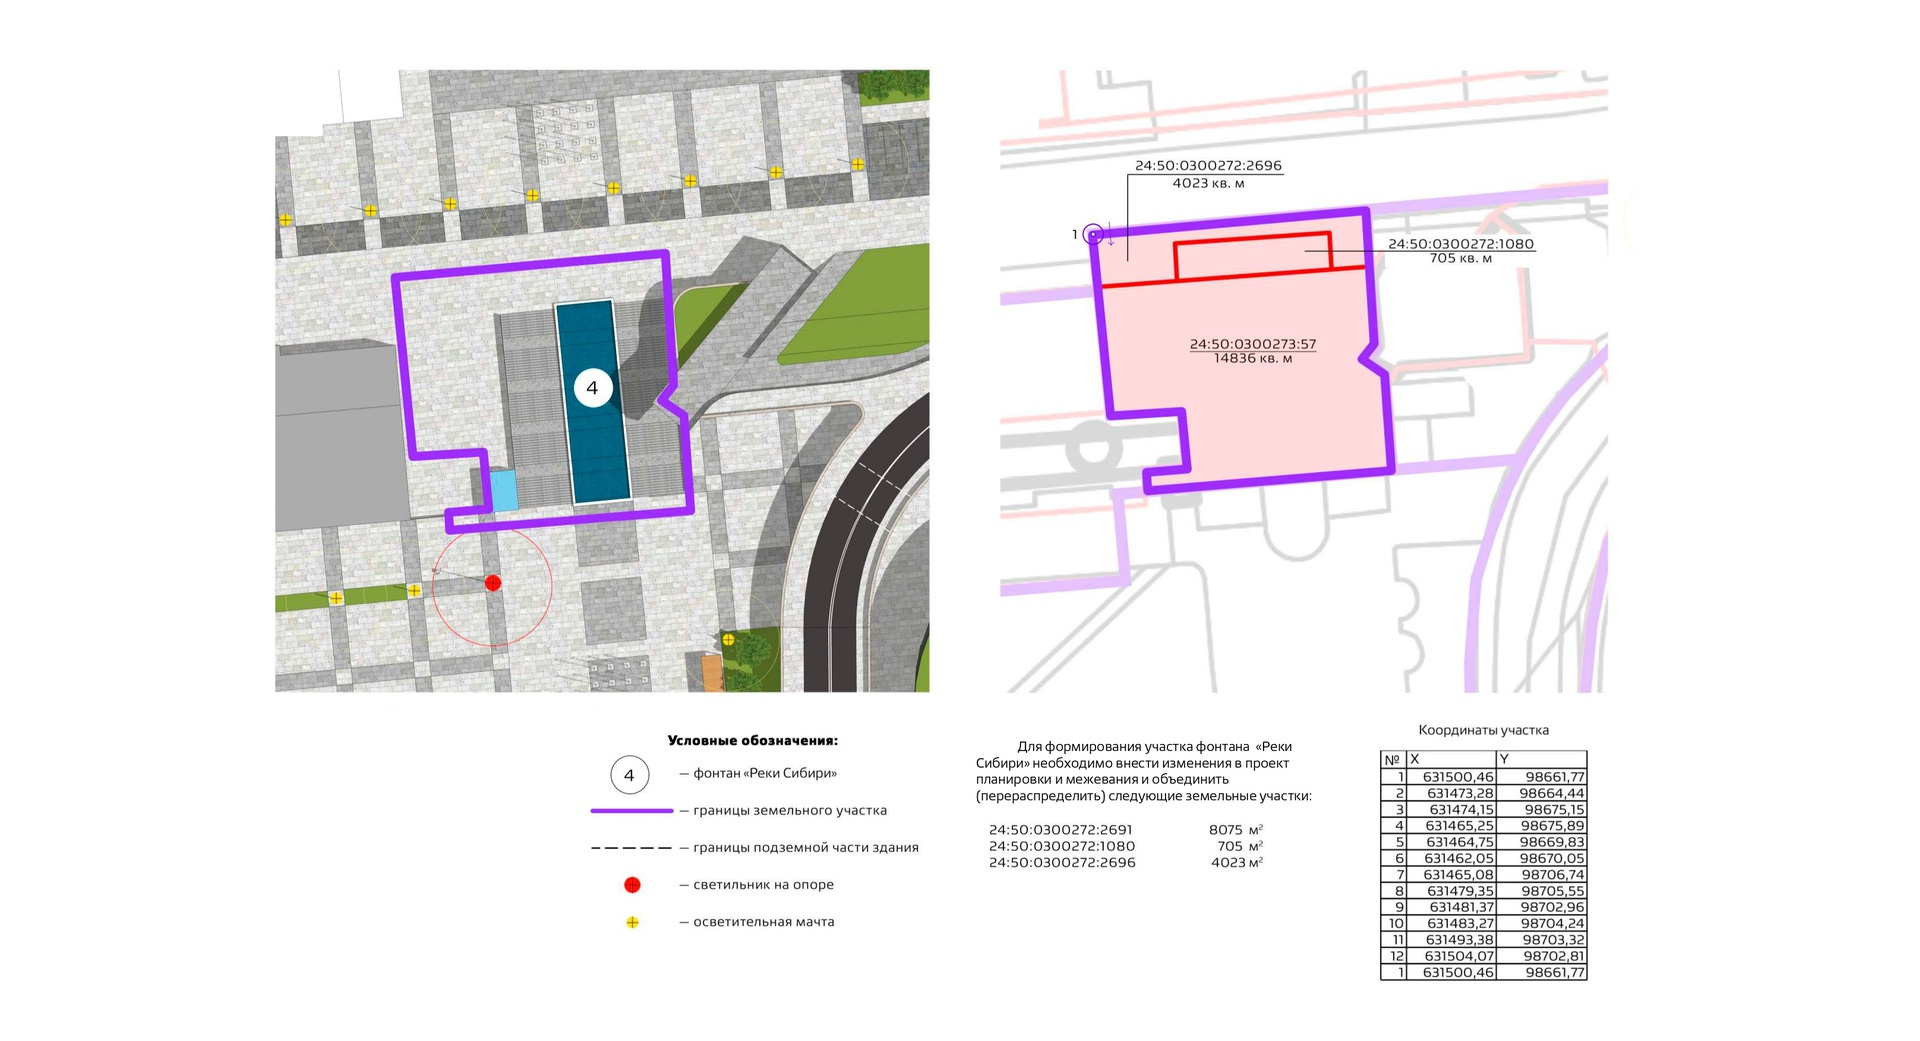 Место фонтана указано на мастер-плане реконструкции Театральной площади. Все работы должны завершить к 2028 году